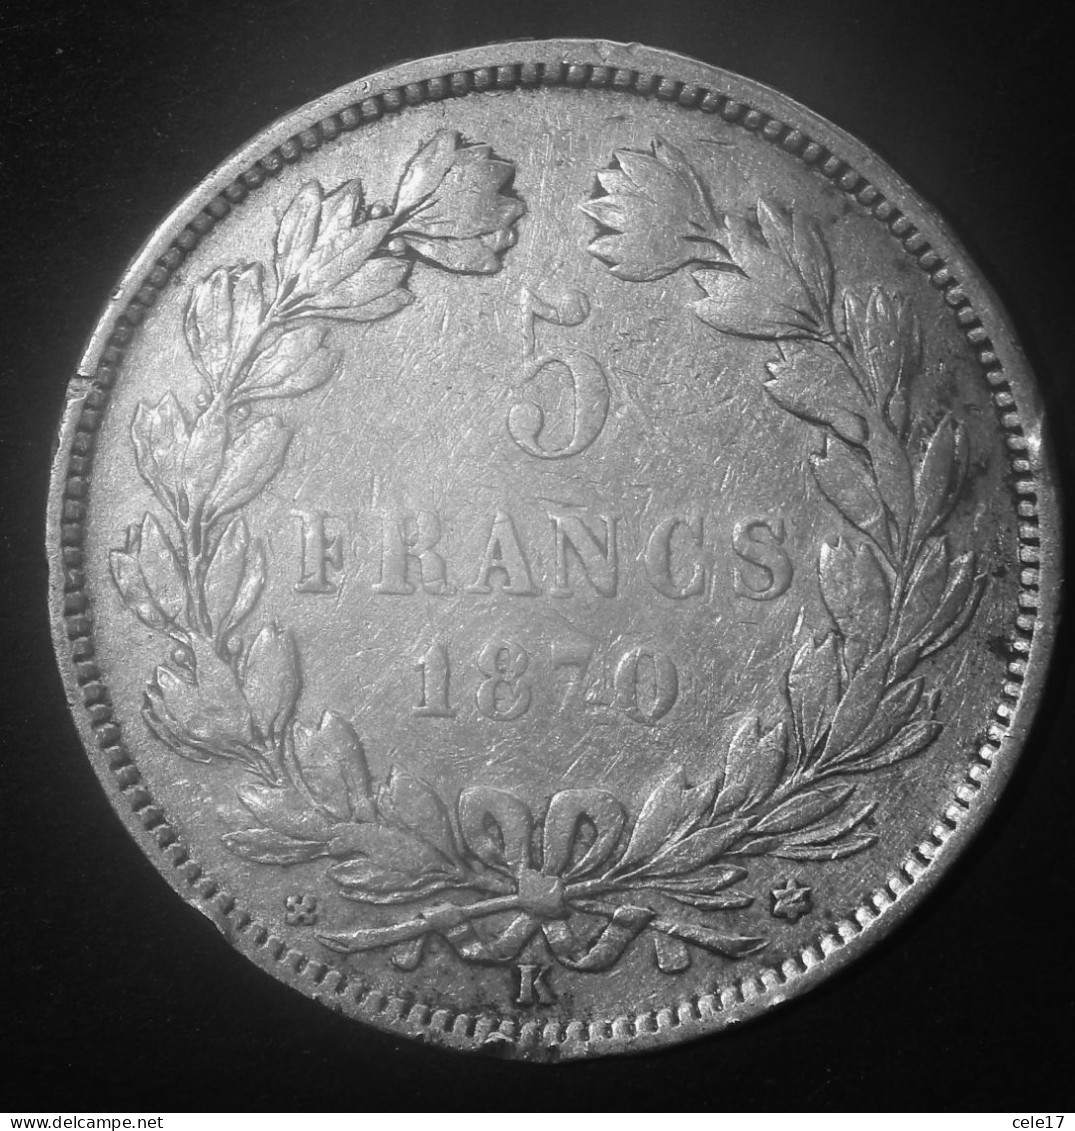 FRANCIA- CERES 5 FRANCHI 1870 ARGENTO- M/star- KM812.2 - 1870-1871 Governo Di Difesa Nazionale